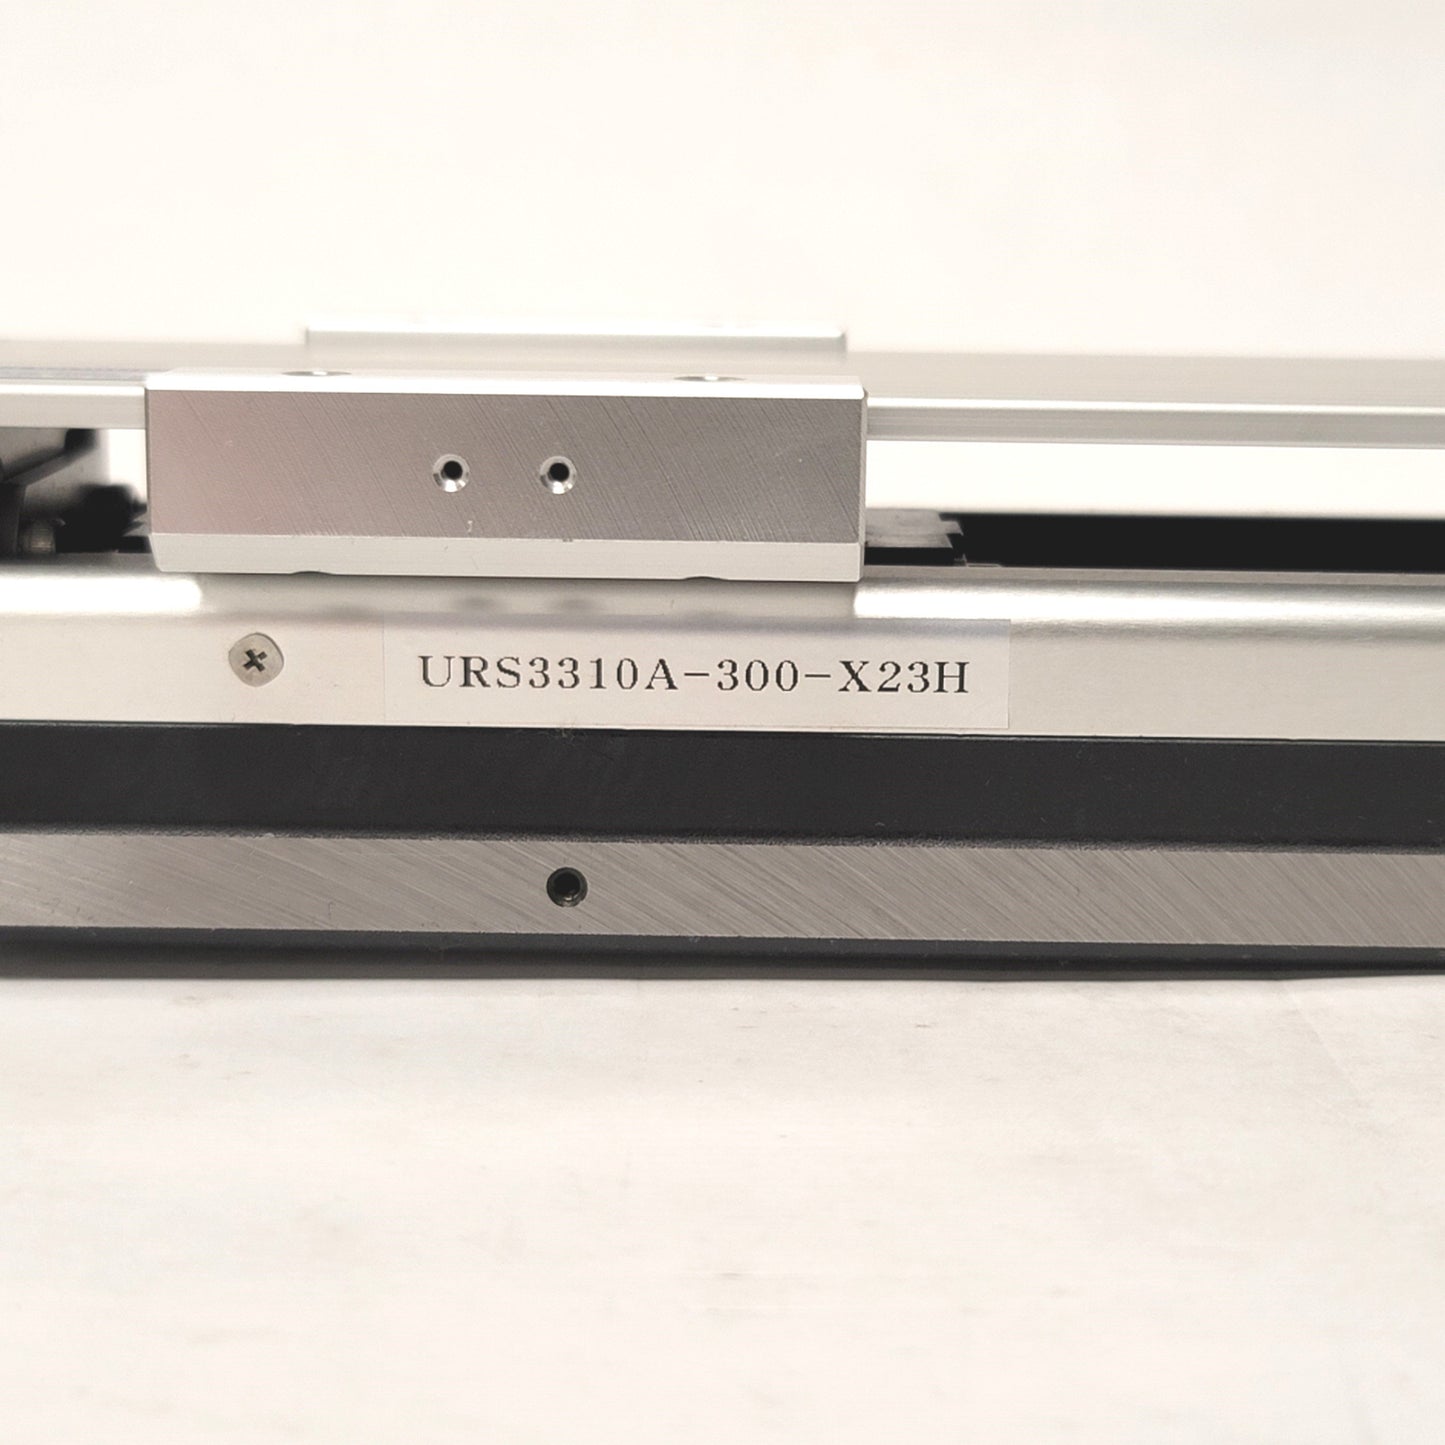 Kollmorgen URS3310A-300-X23H Ball Screw Linear Actuator 200mm Stroke NEMA 23